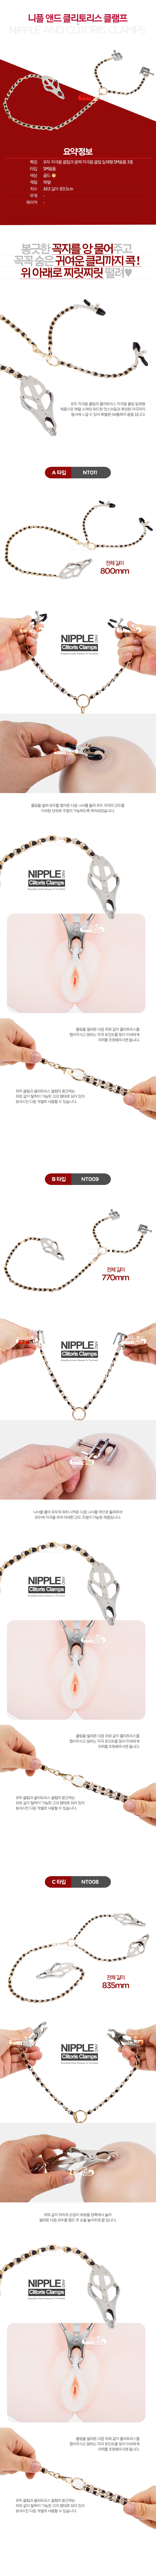 [유두 클리 집게] 니플 앤드 클리토리스 클램프(Nipple and Clitoris Clamps)